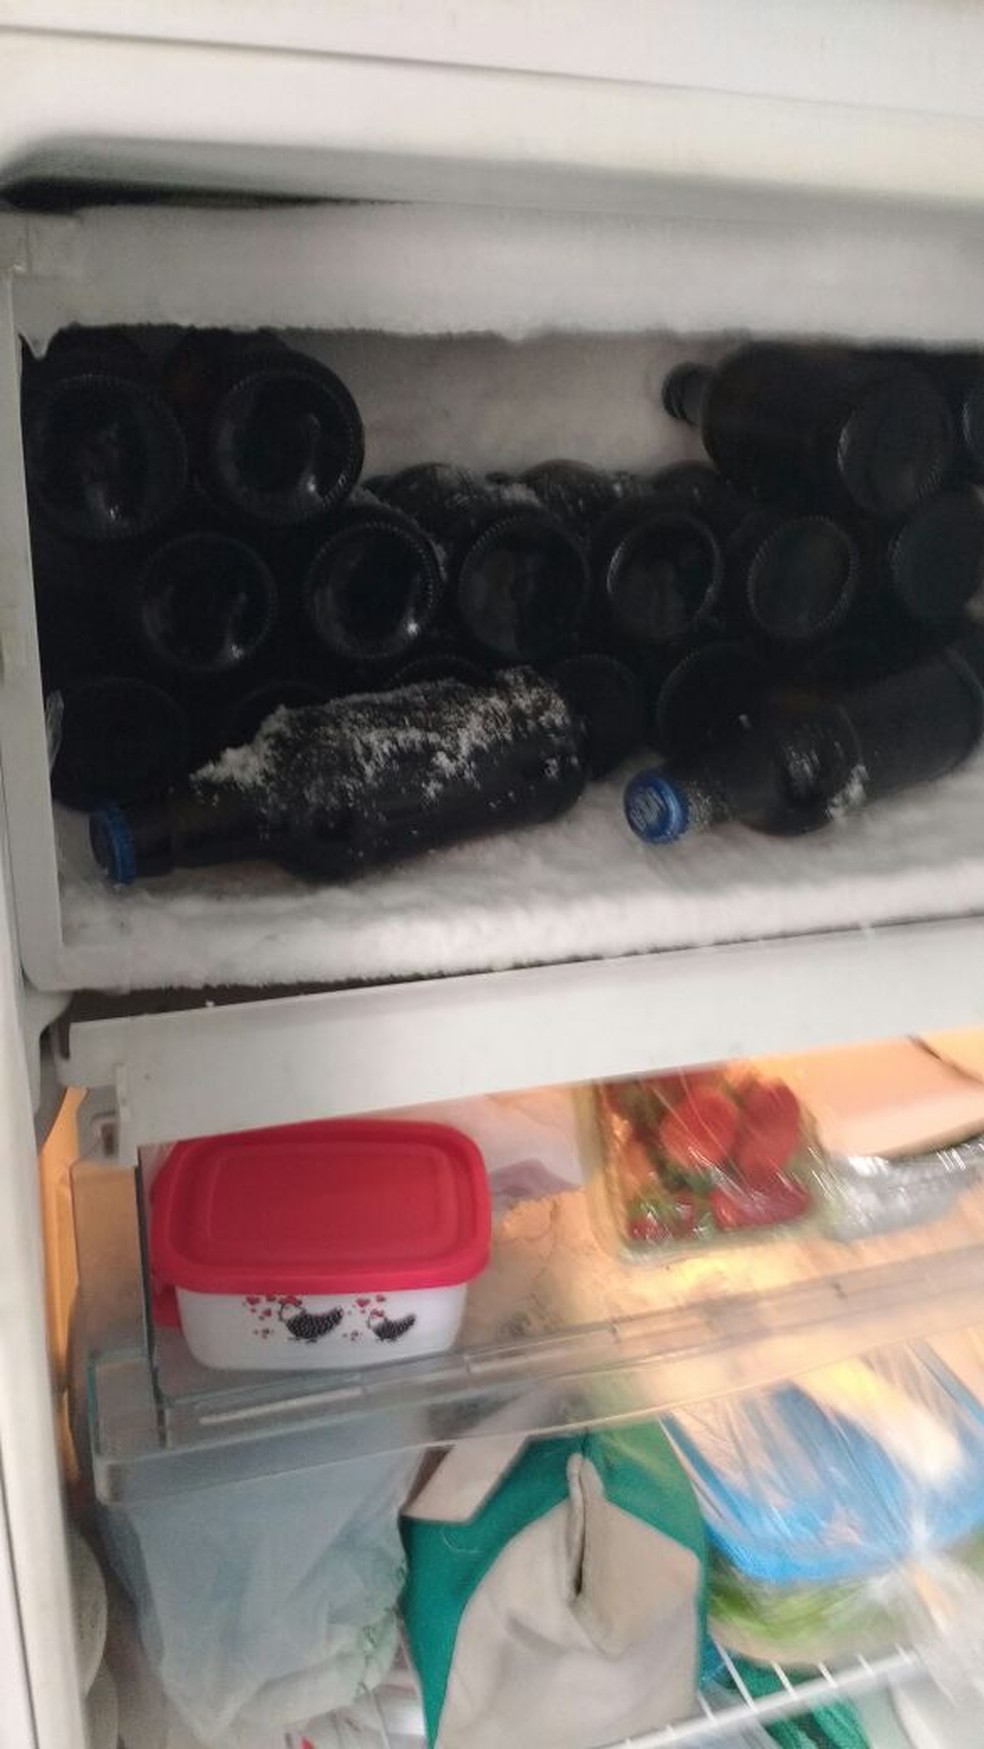 Freezer lotado de cerveja foi encontrado na sede da UPP (Foto: Arquivo Pessoal)